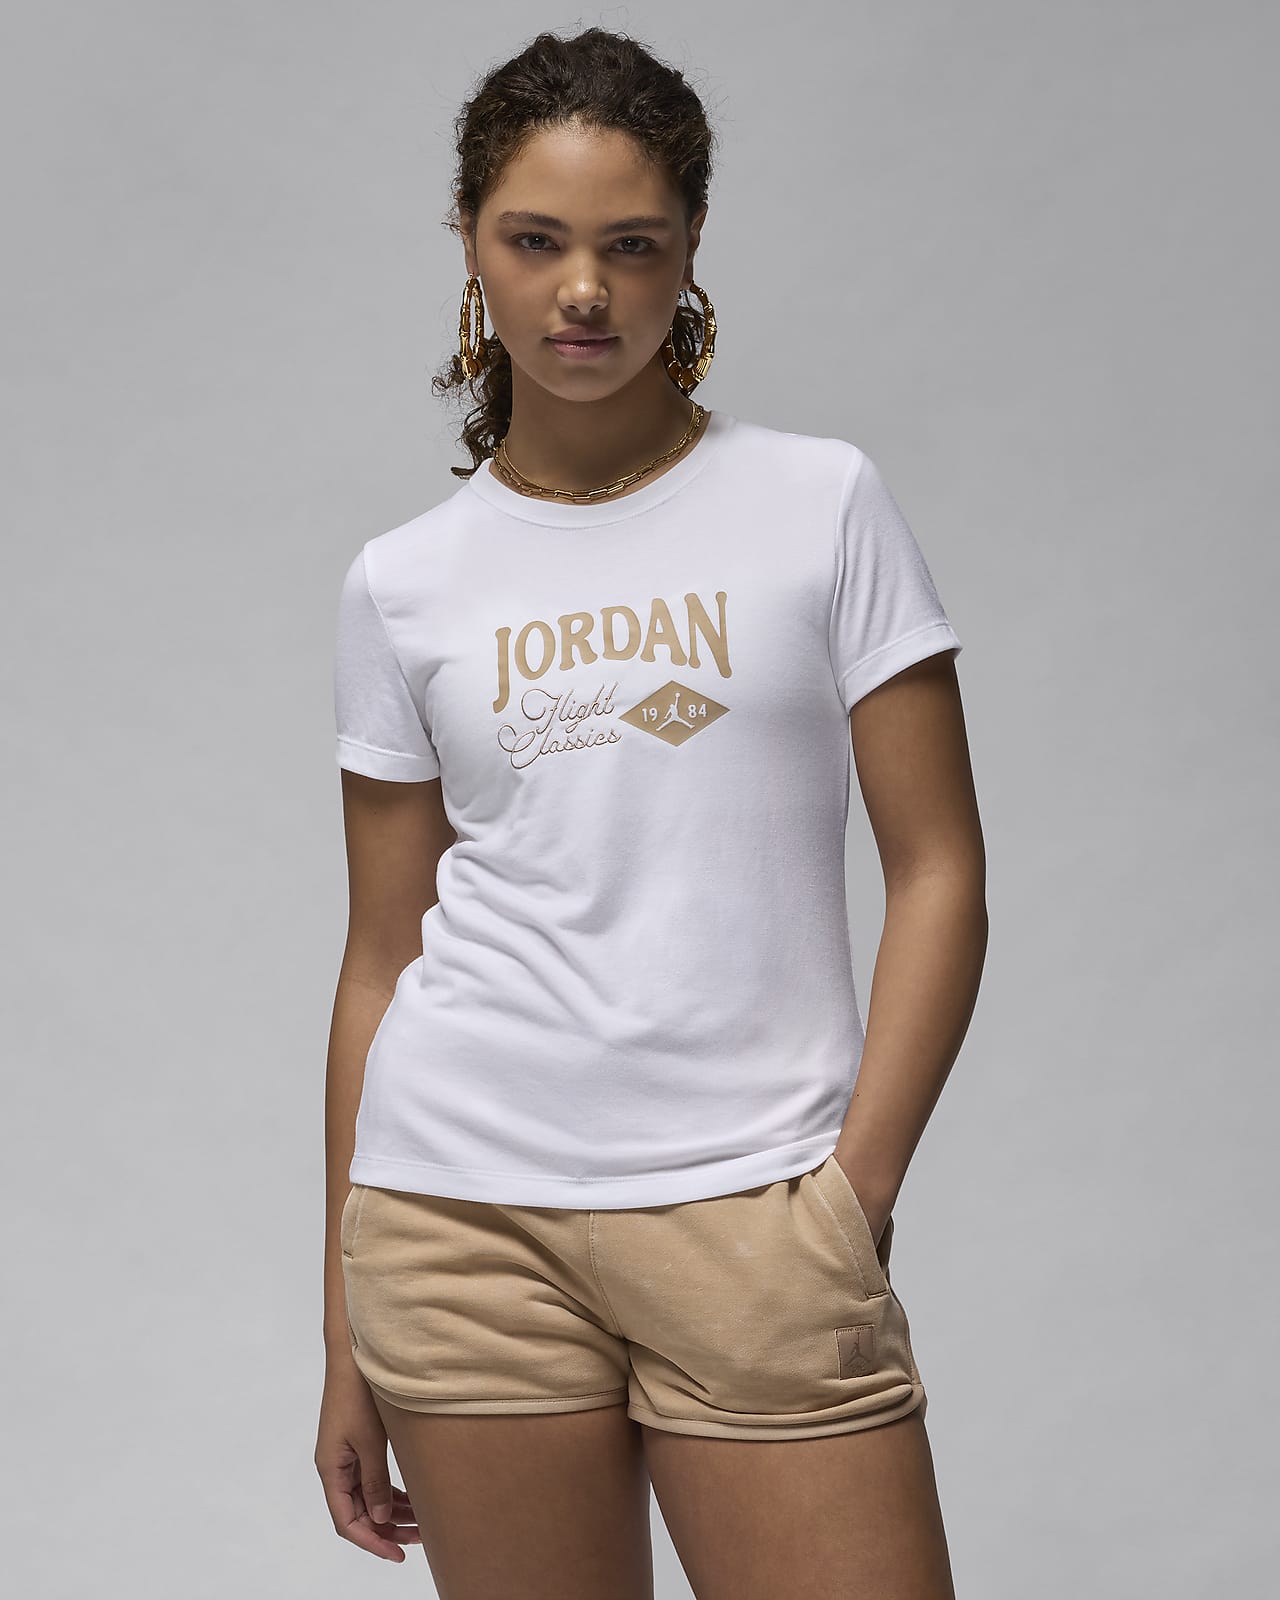 Γυναικείο T-Shirt σε στενή γραμμή με σχέδιο Jordan